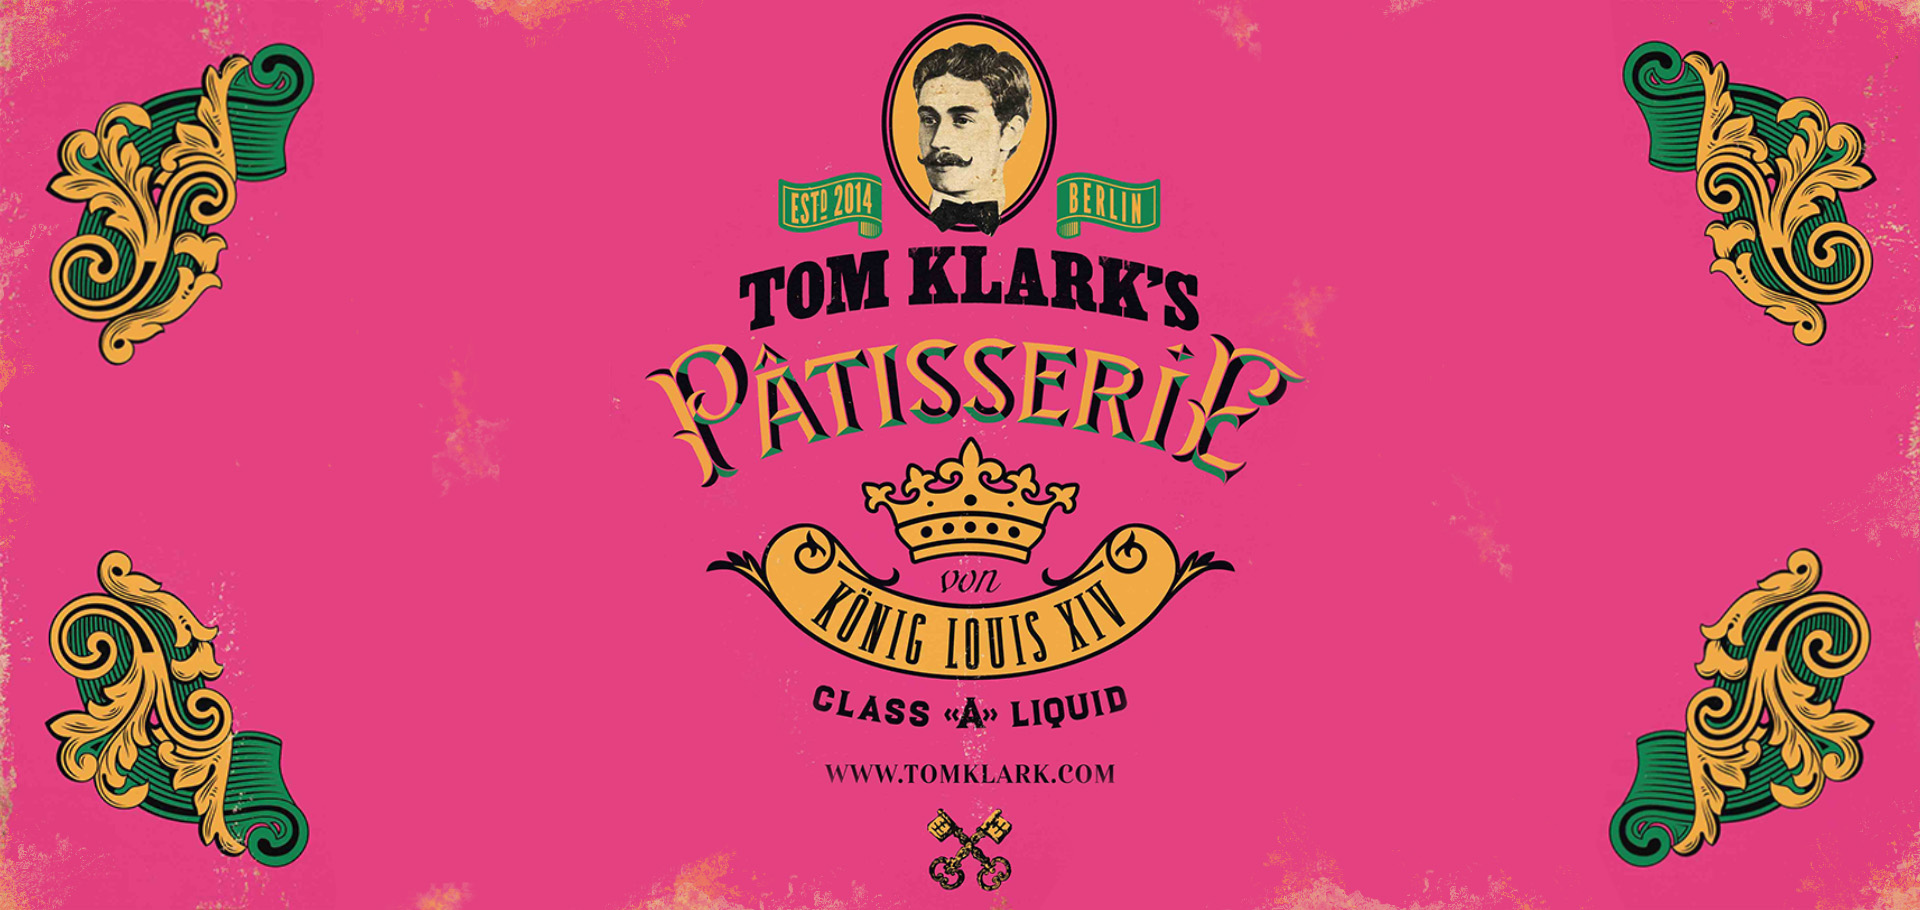 Revue Tom Klark's Pâtisserie